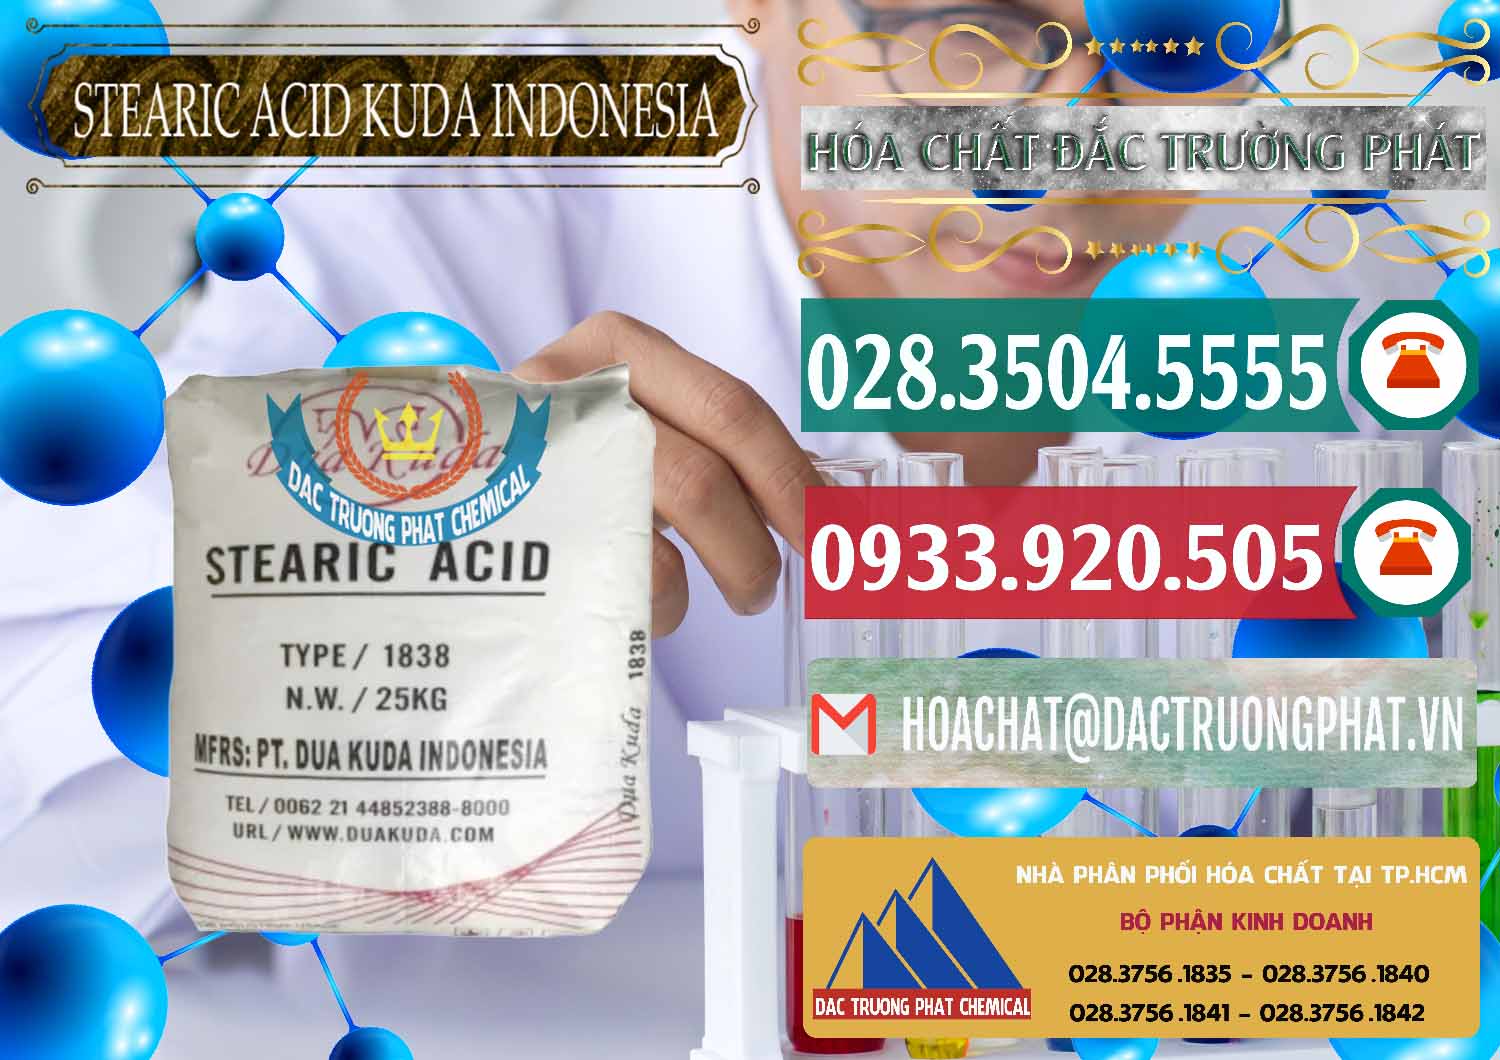 Cty phân phối & bán Axit Stearic - Stearic Acid Dua Kuda Indonesia - 0388 - Phân phối & cung cấp hóa chất tại TP.HCM - muabanhoachat.vn